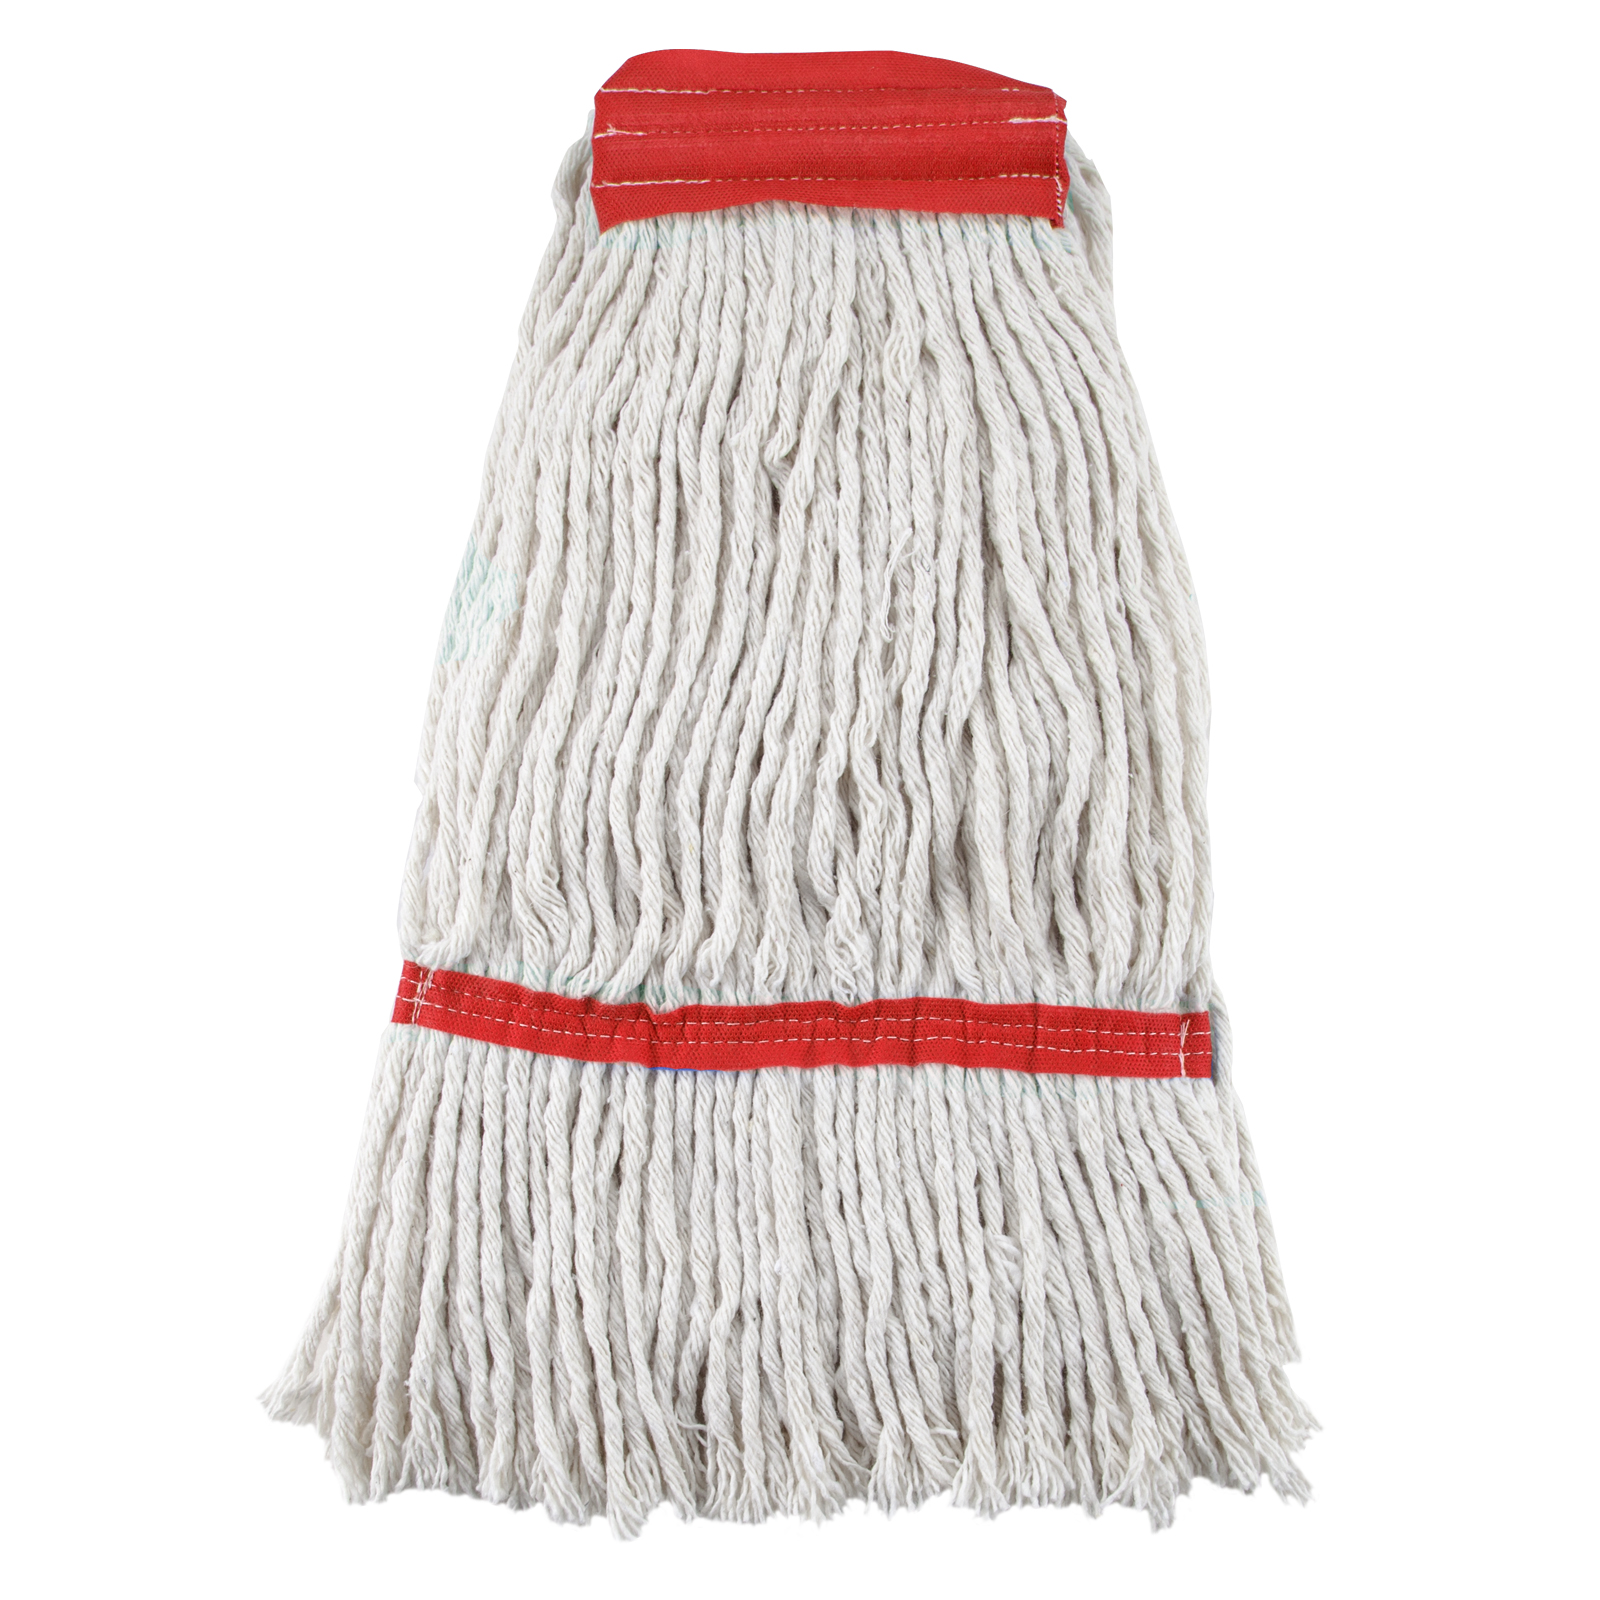 Ricambio mop cotone per pinza "Spring" rosso 400gr - 41 cm | Briantina Professional